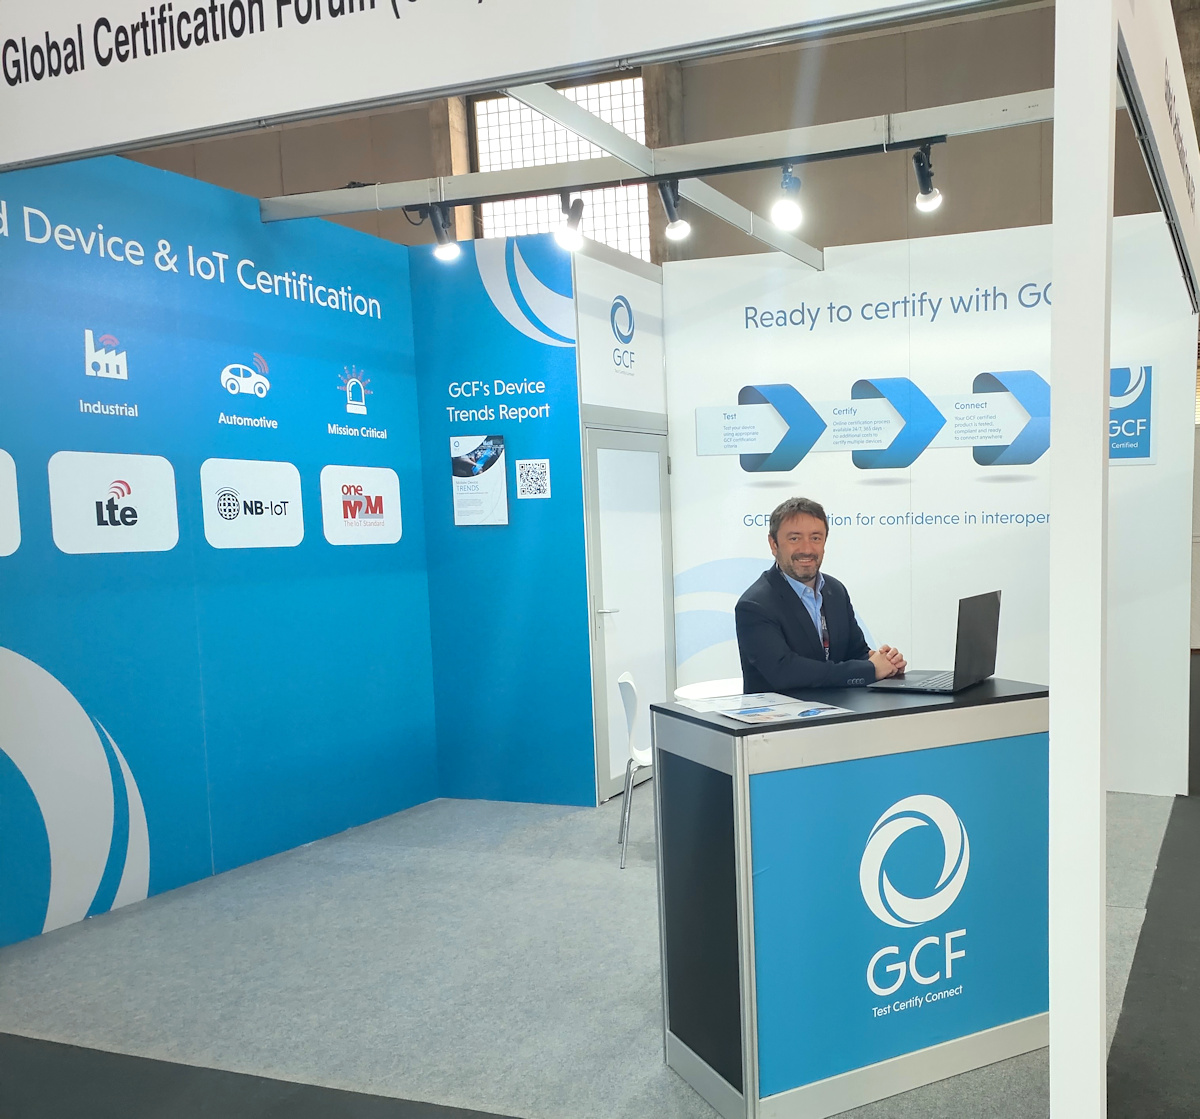 Global Certification Forum está preparado para atender una creciente demanda de servicios de certificación en el ámbito del IoT